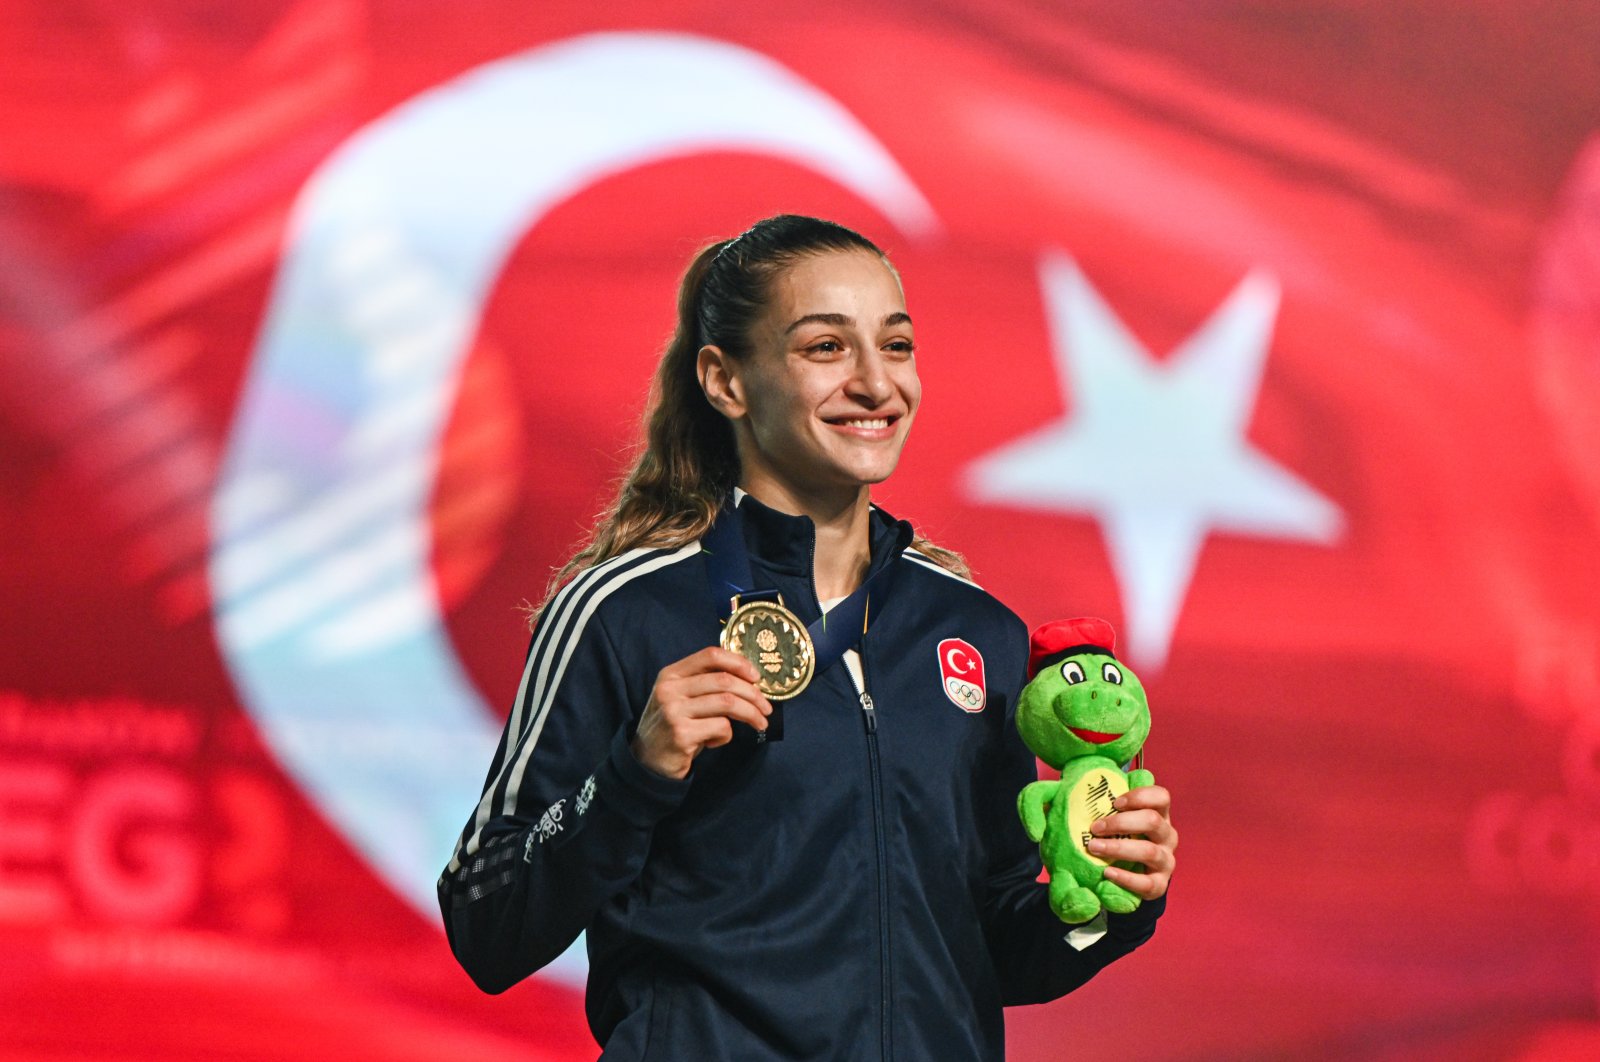 Türkiye zdobywa rekordowy medal na III Igrzyskach Europejskich w Polsce